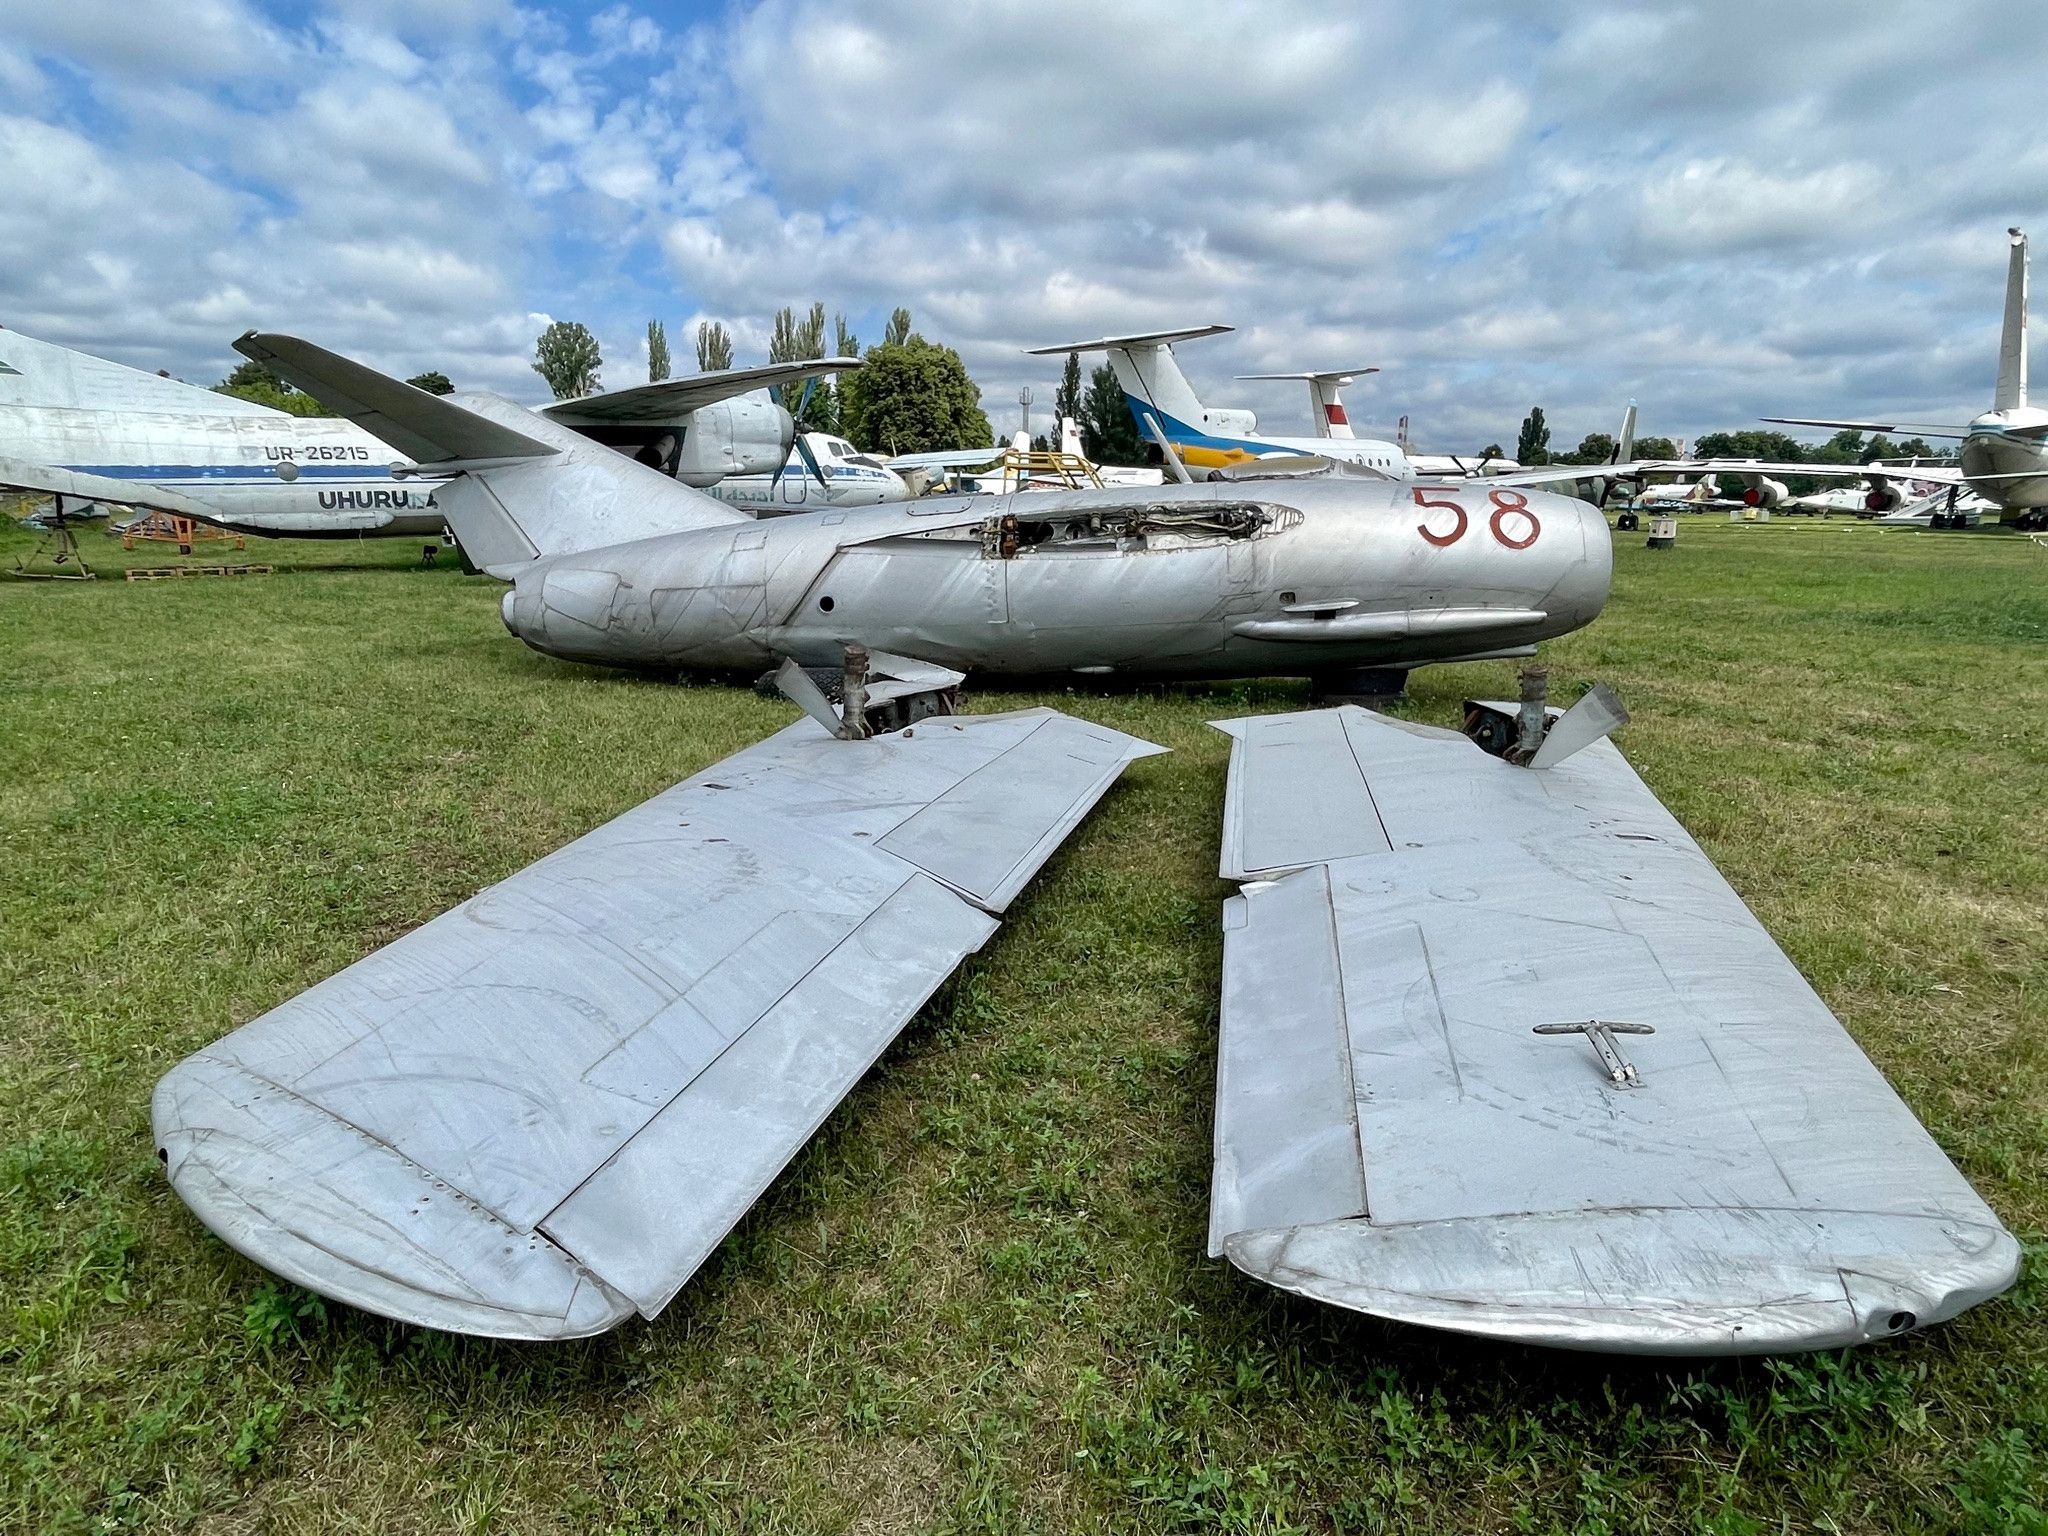 Колекцію Державного музею авіації імені О. К. Антонова тепер буде доповнювати винищувач МІГ-15 - зображення